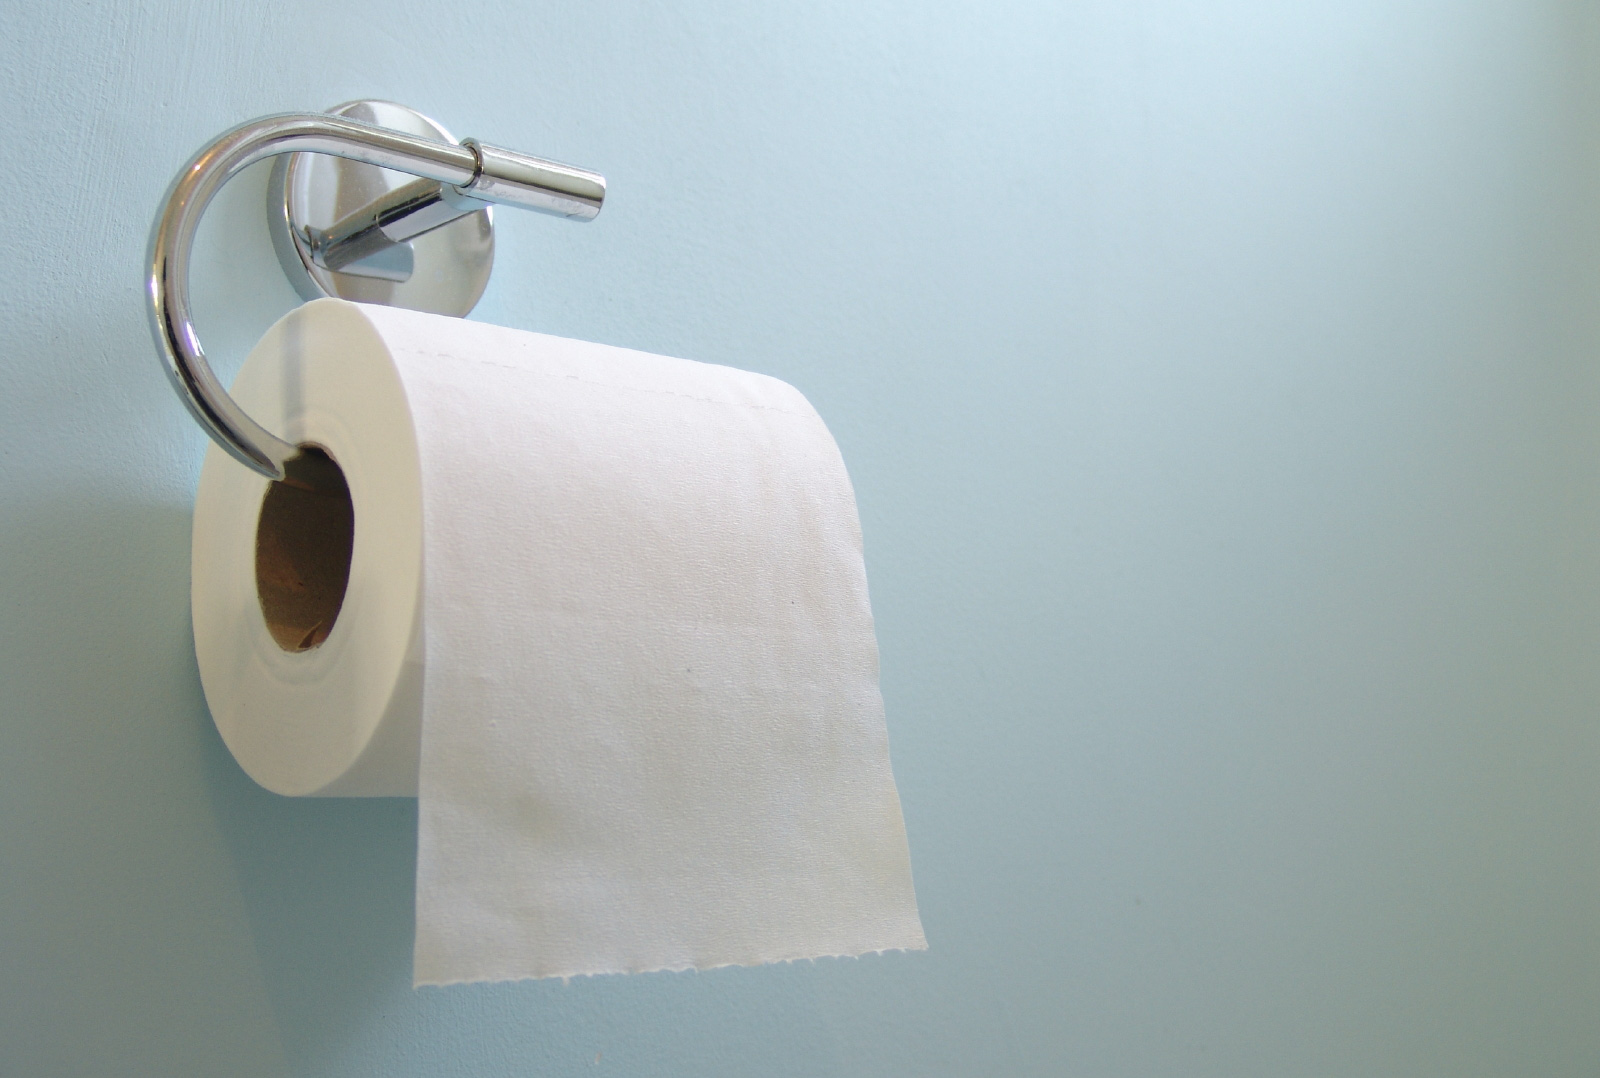 Cảnh báo: Chị em đang rước bệnh vào người vì thói quen sử dụng giấy vệ sinh sai lầm này - Ảnh 4